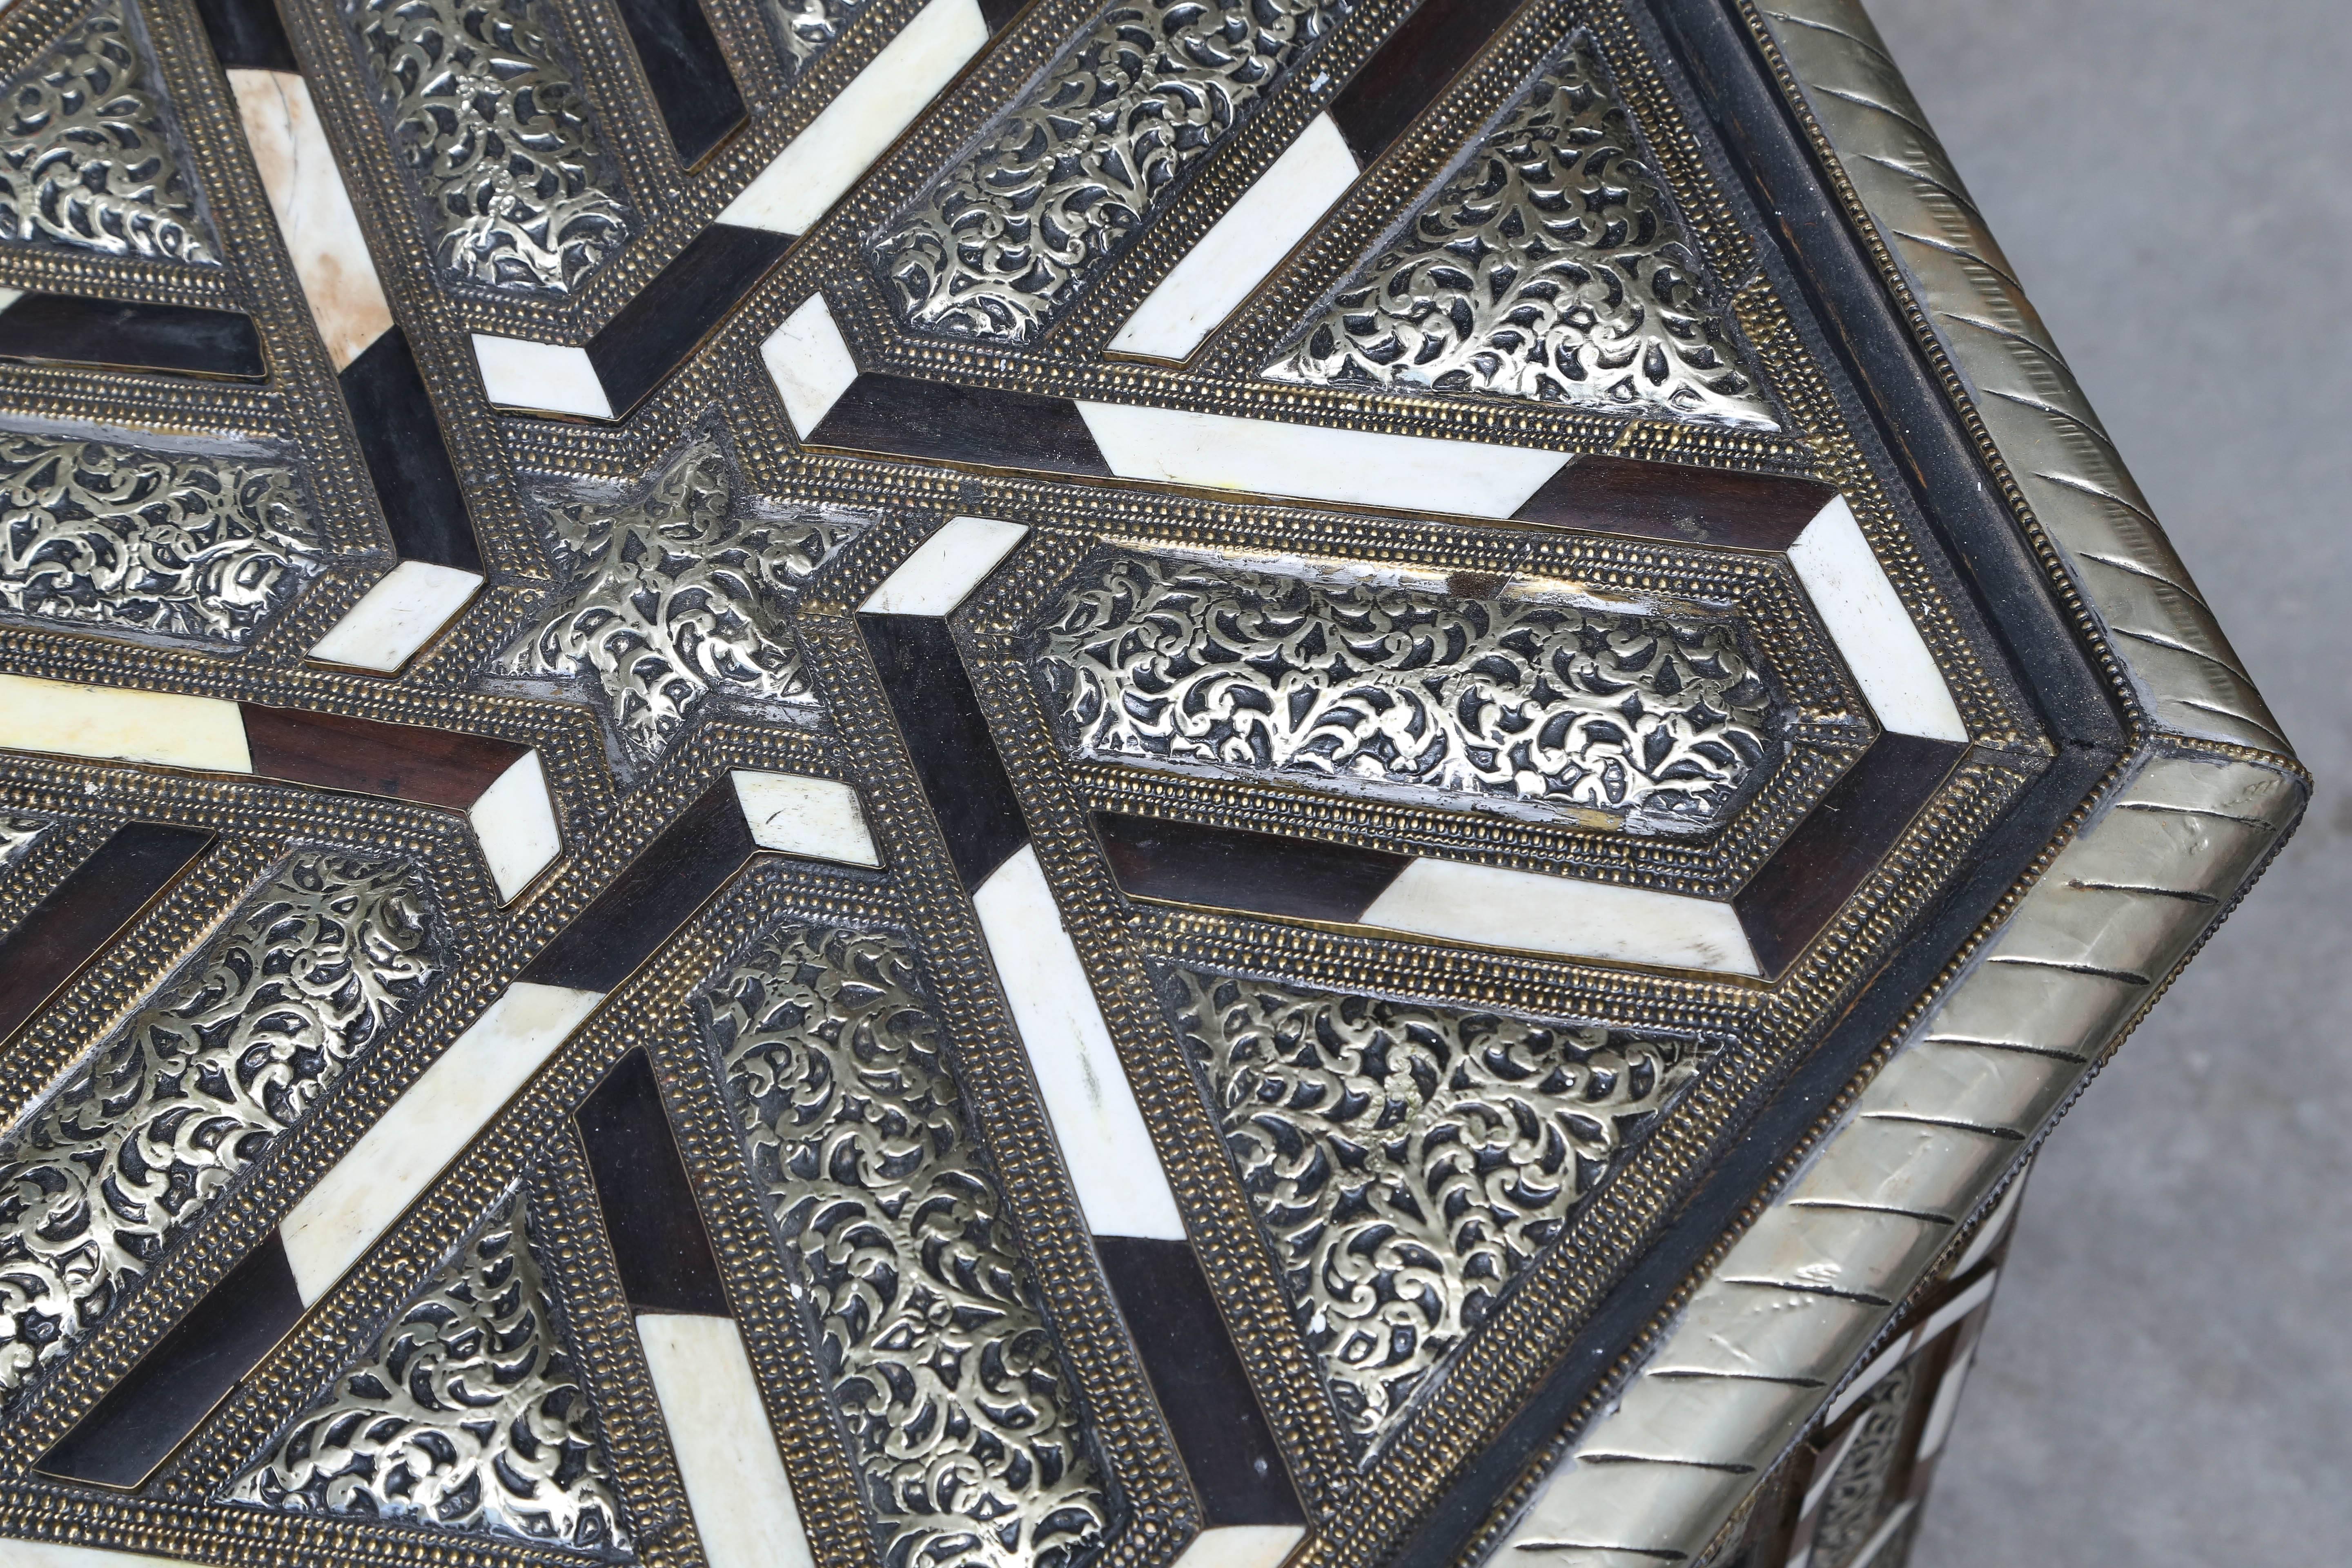 moroccan hexagonal table